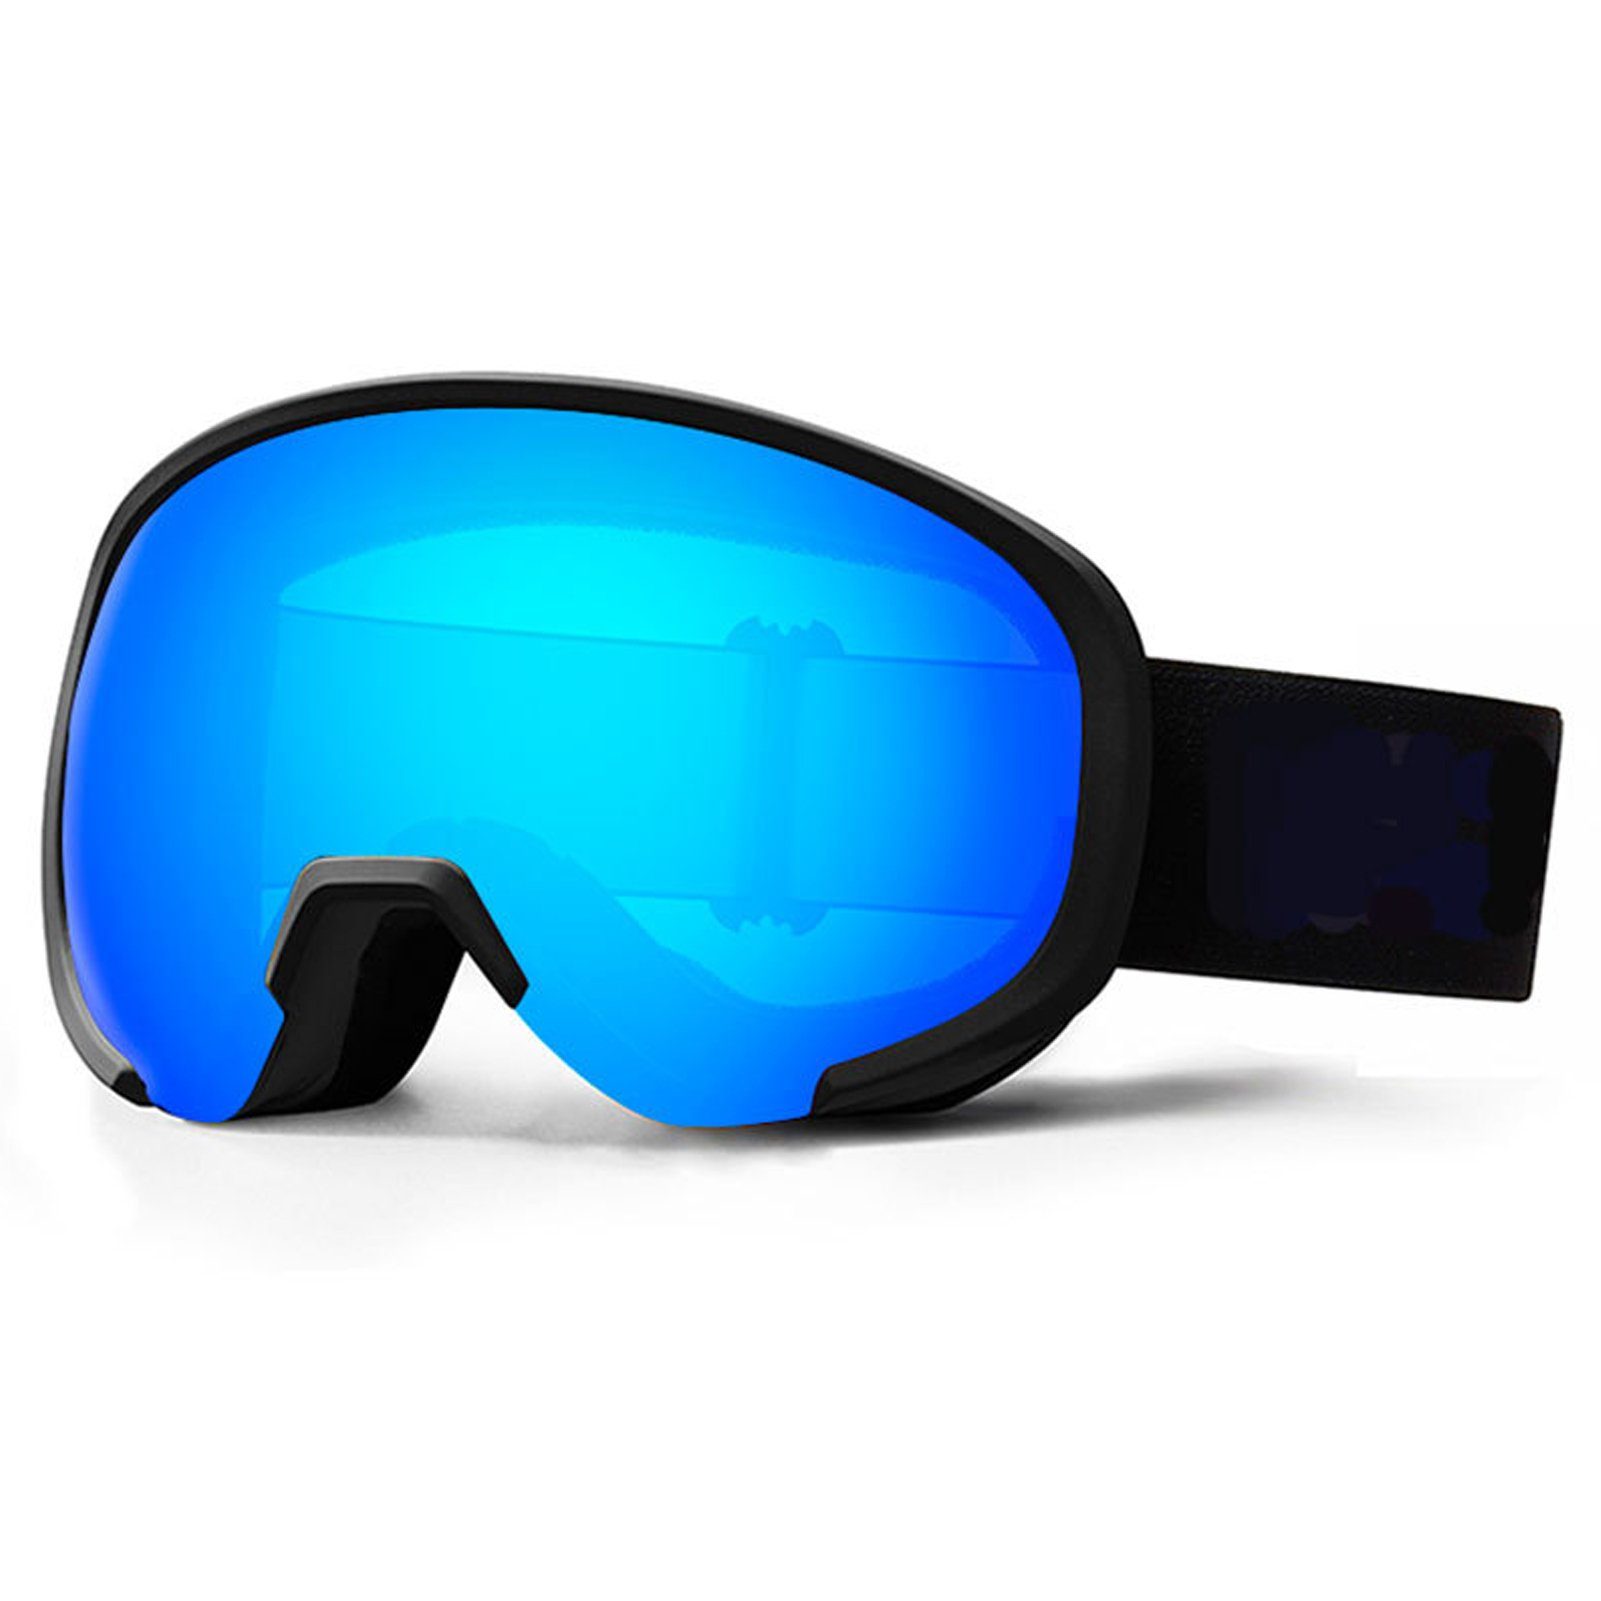 Blusmart Skibrille Ski-Snowboard-Brille Mit Breiter Sicht, Rutschfeste 1